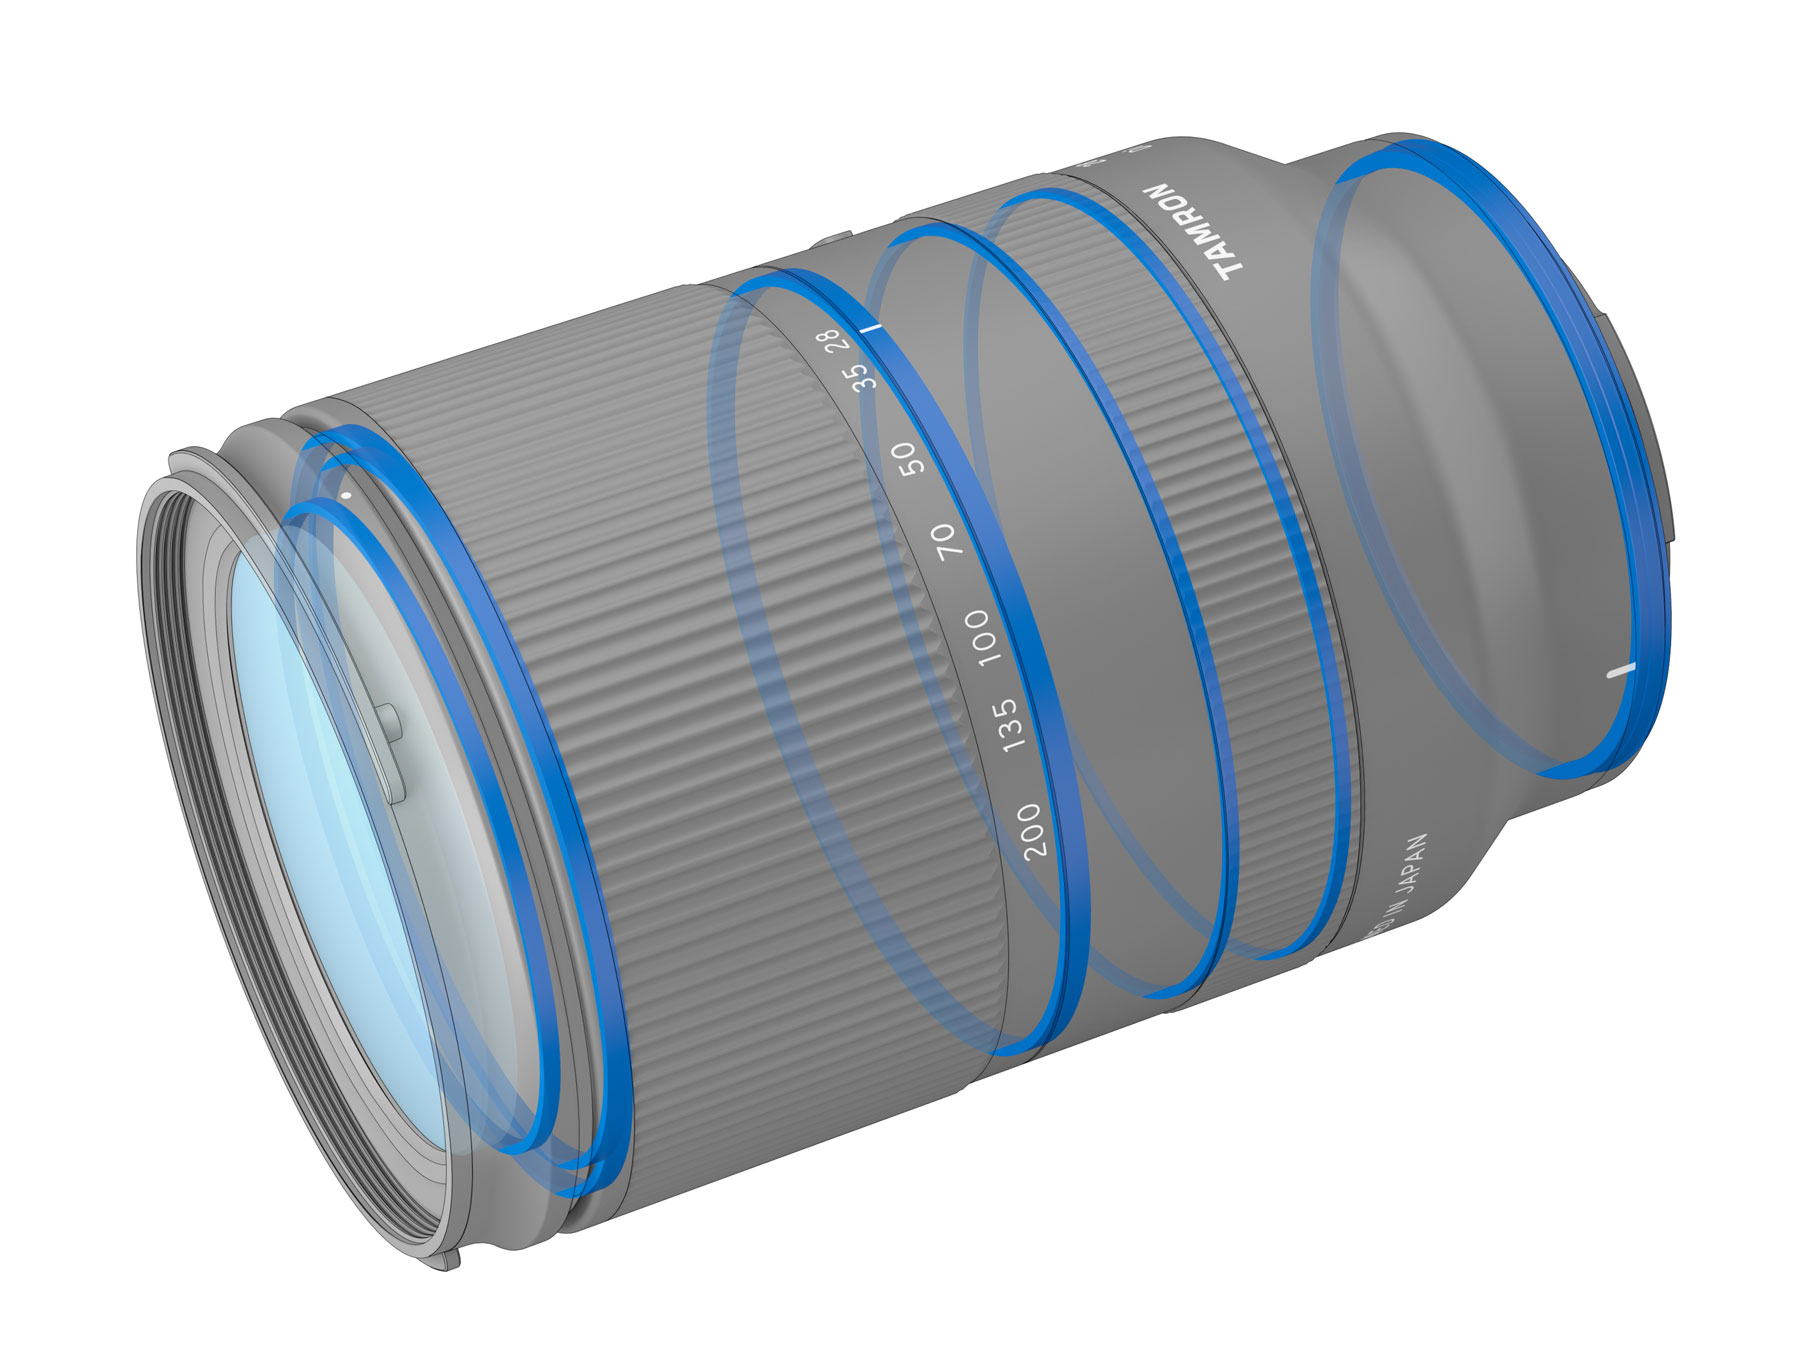 Tamron ra mắt ống kính zoom đa năng 28-200mm F2.8-5.6 dành cho ngàm Sony E